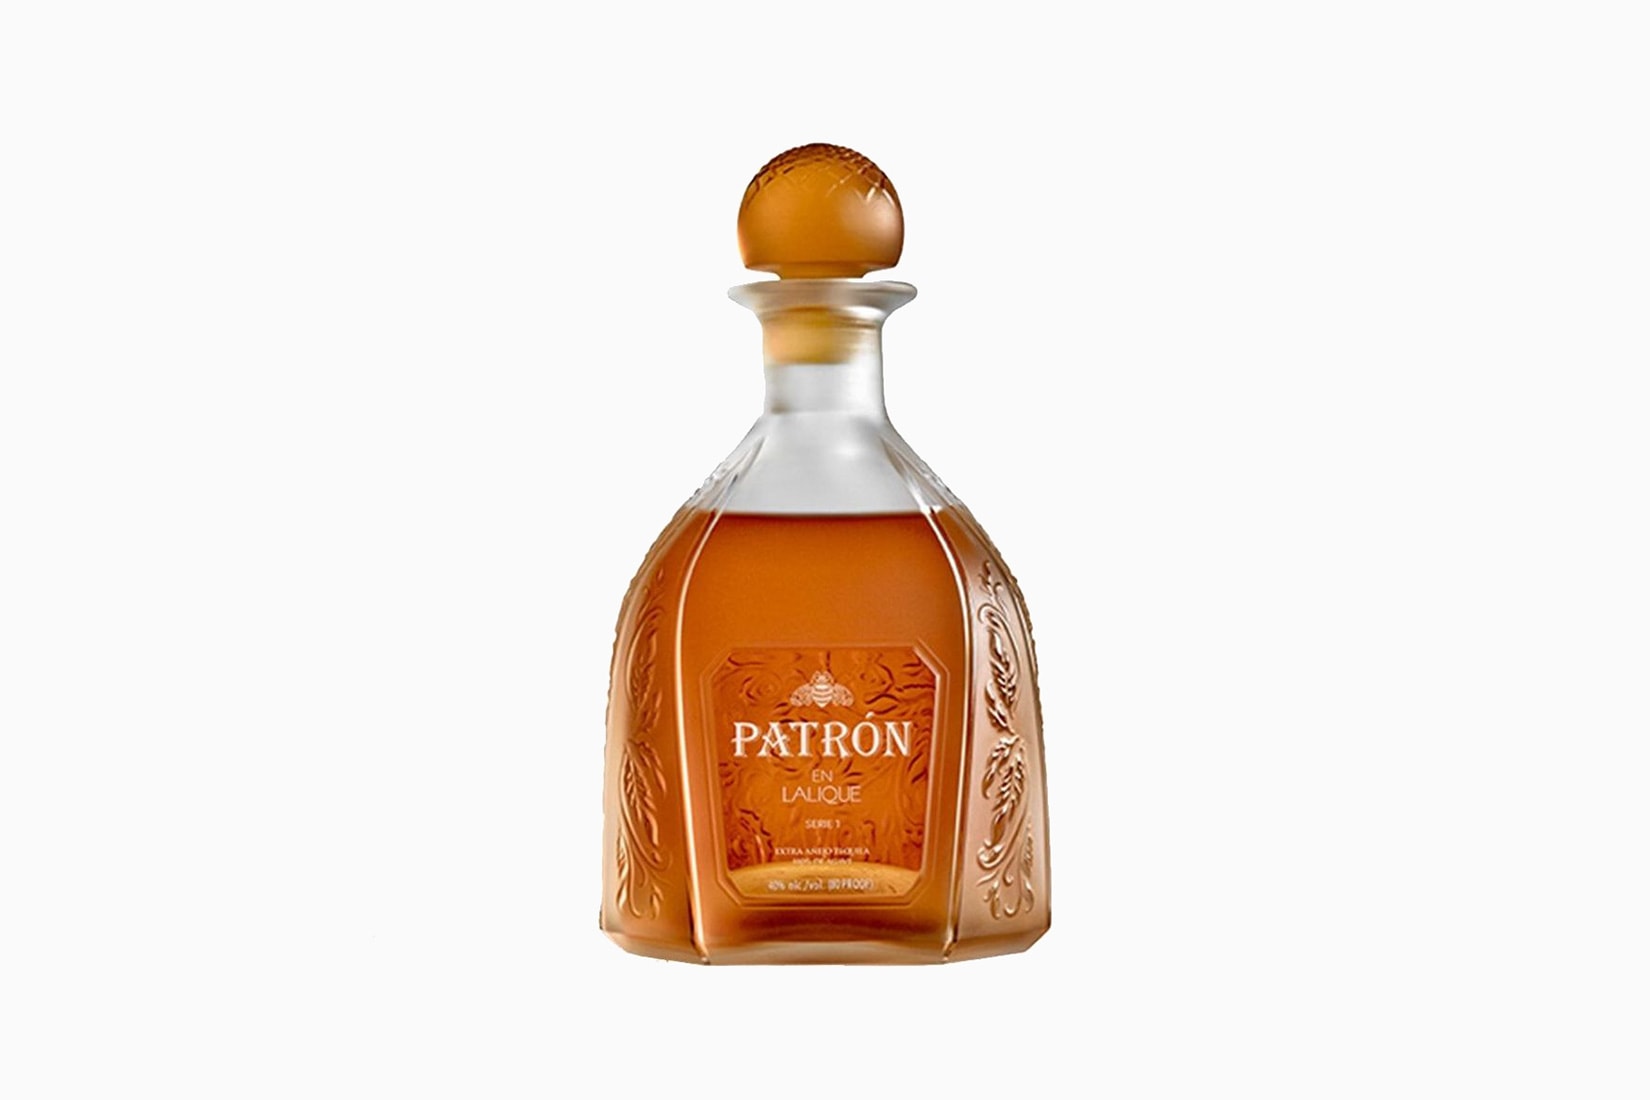 patron Tequila en Lalique bottle price size - Luxe Digital 